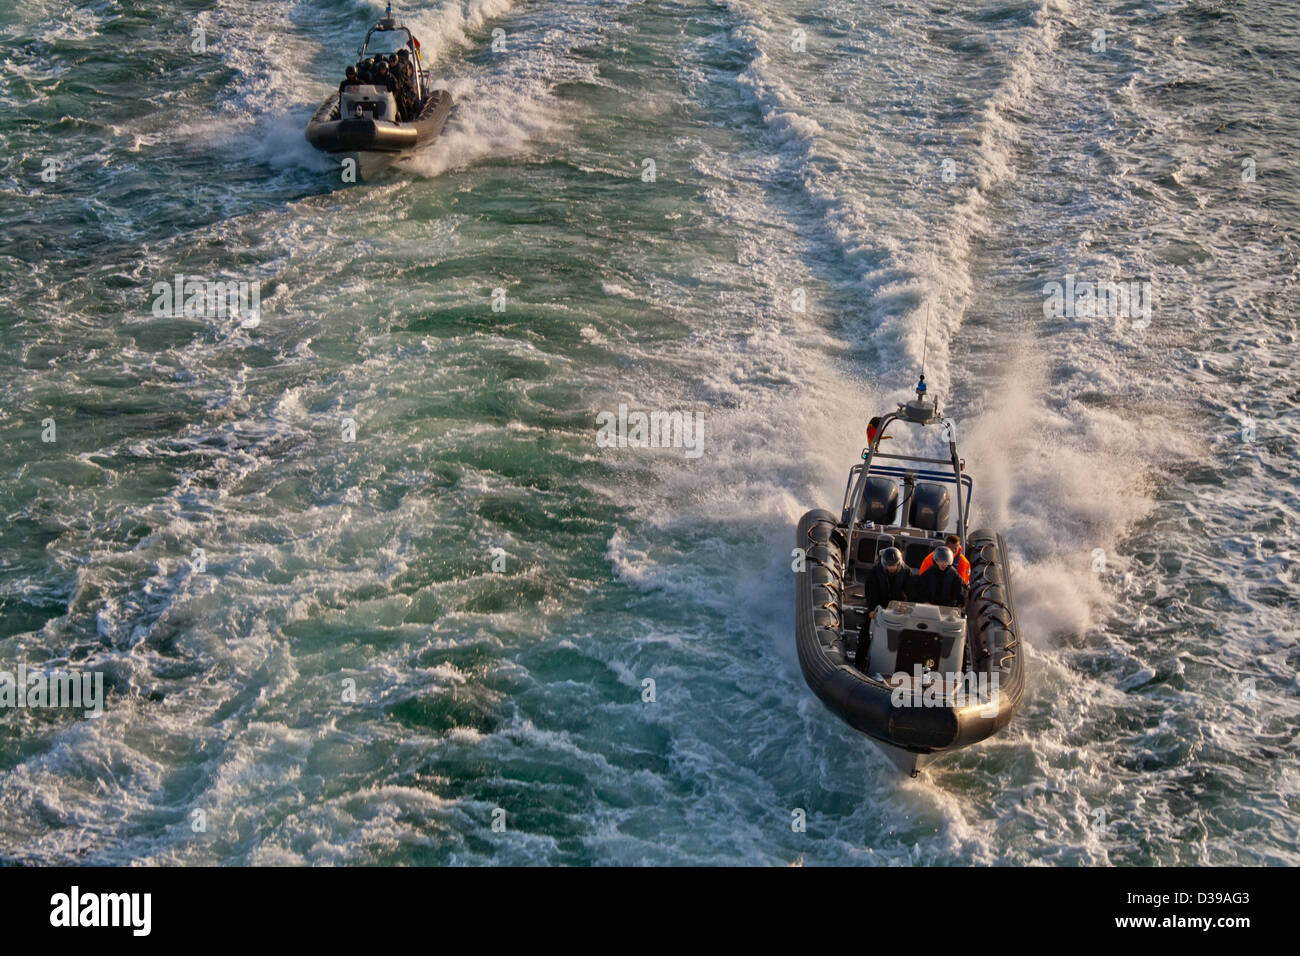 Forces spéciales SWAT -police- coque rigide gonflable (type zodiac) à la vitesse des bateaux sur l'eau ouverte. Banque D'Images